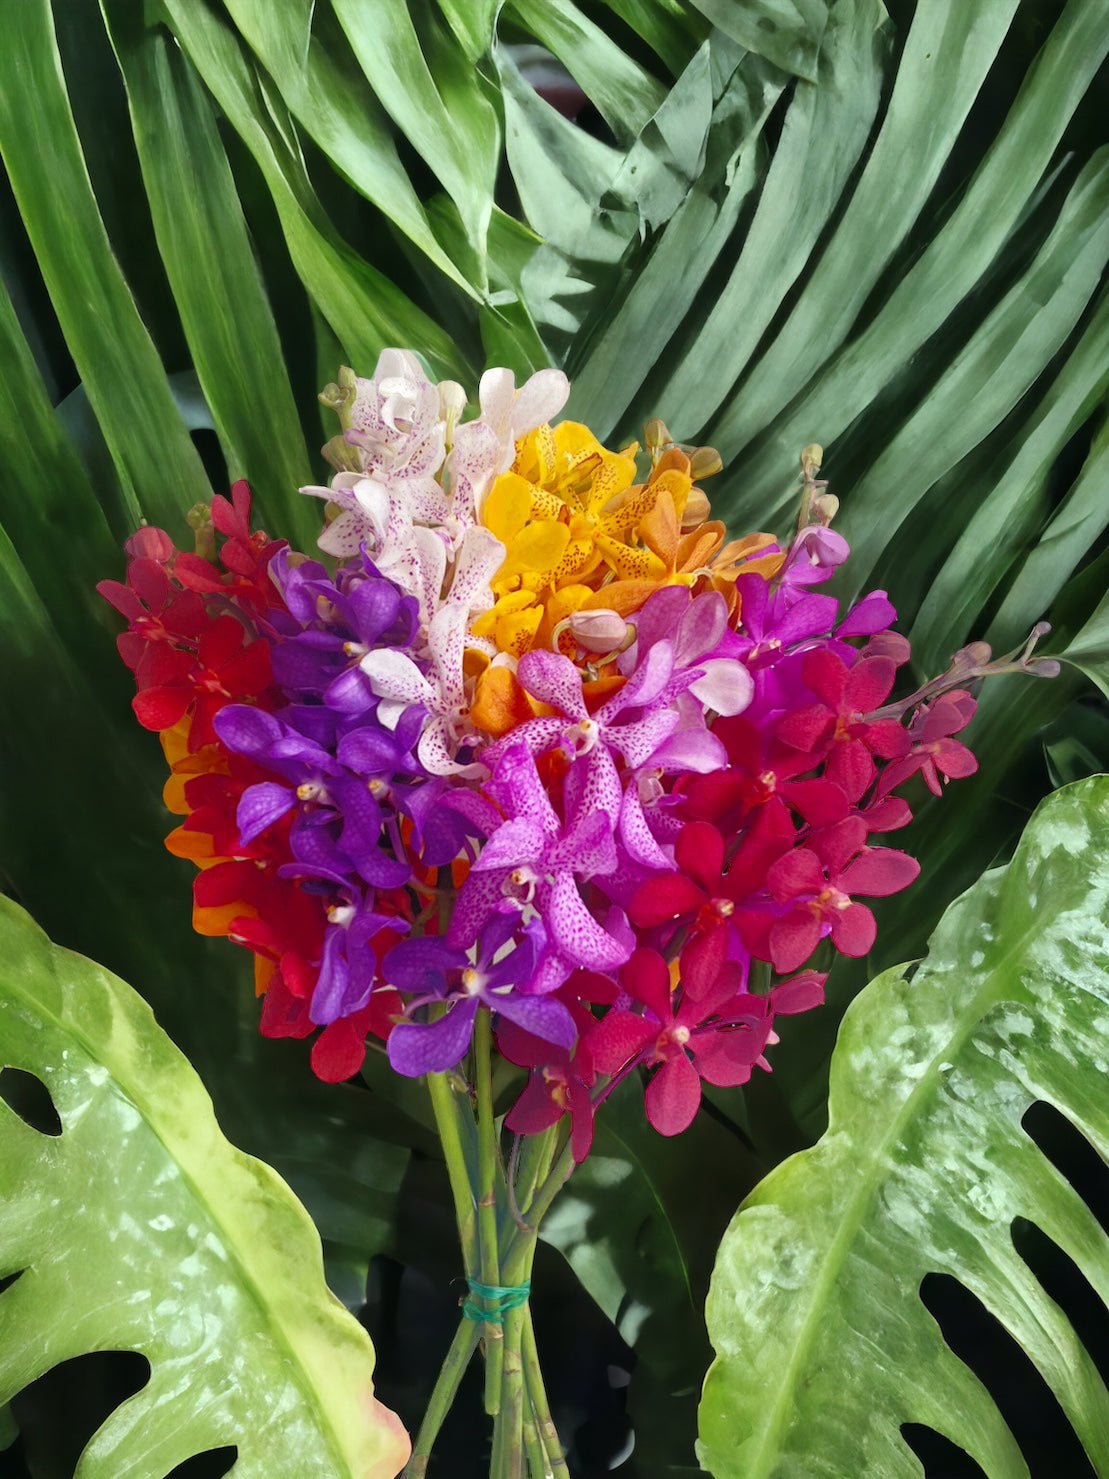 Prebook Exotic Bouquet Fresh Cut MOKARA Orchid Seasonal Farm's Choice